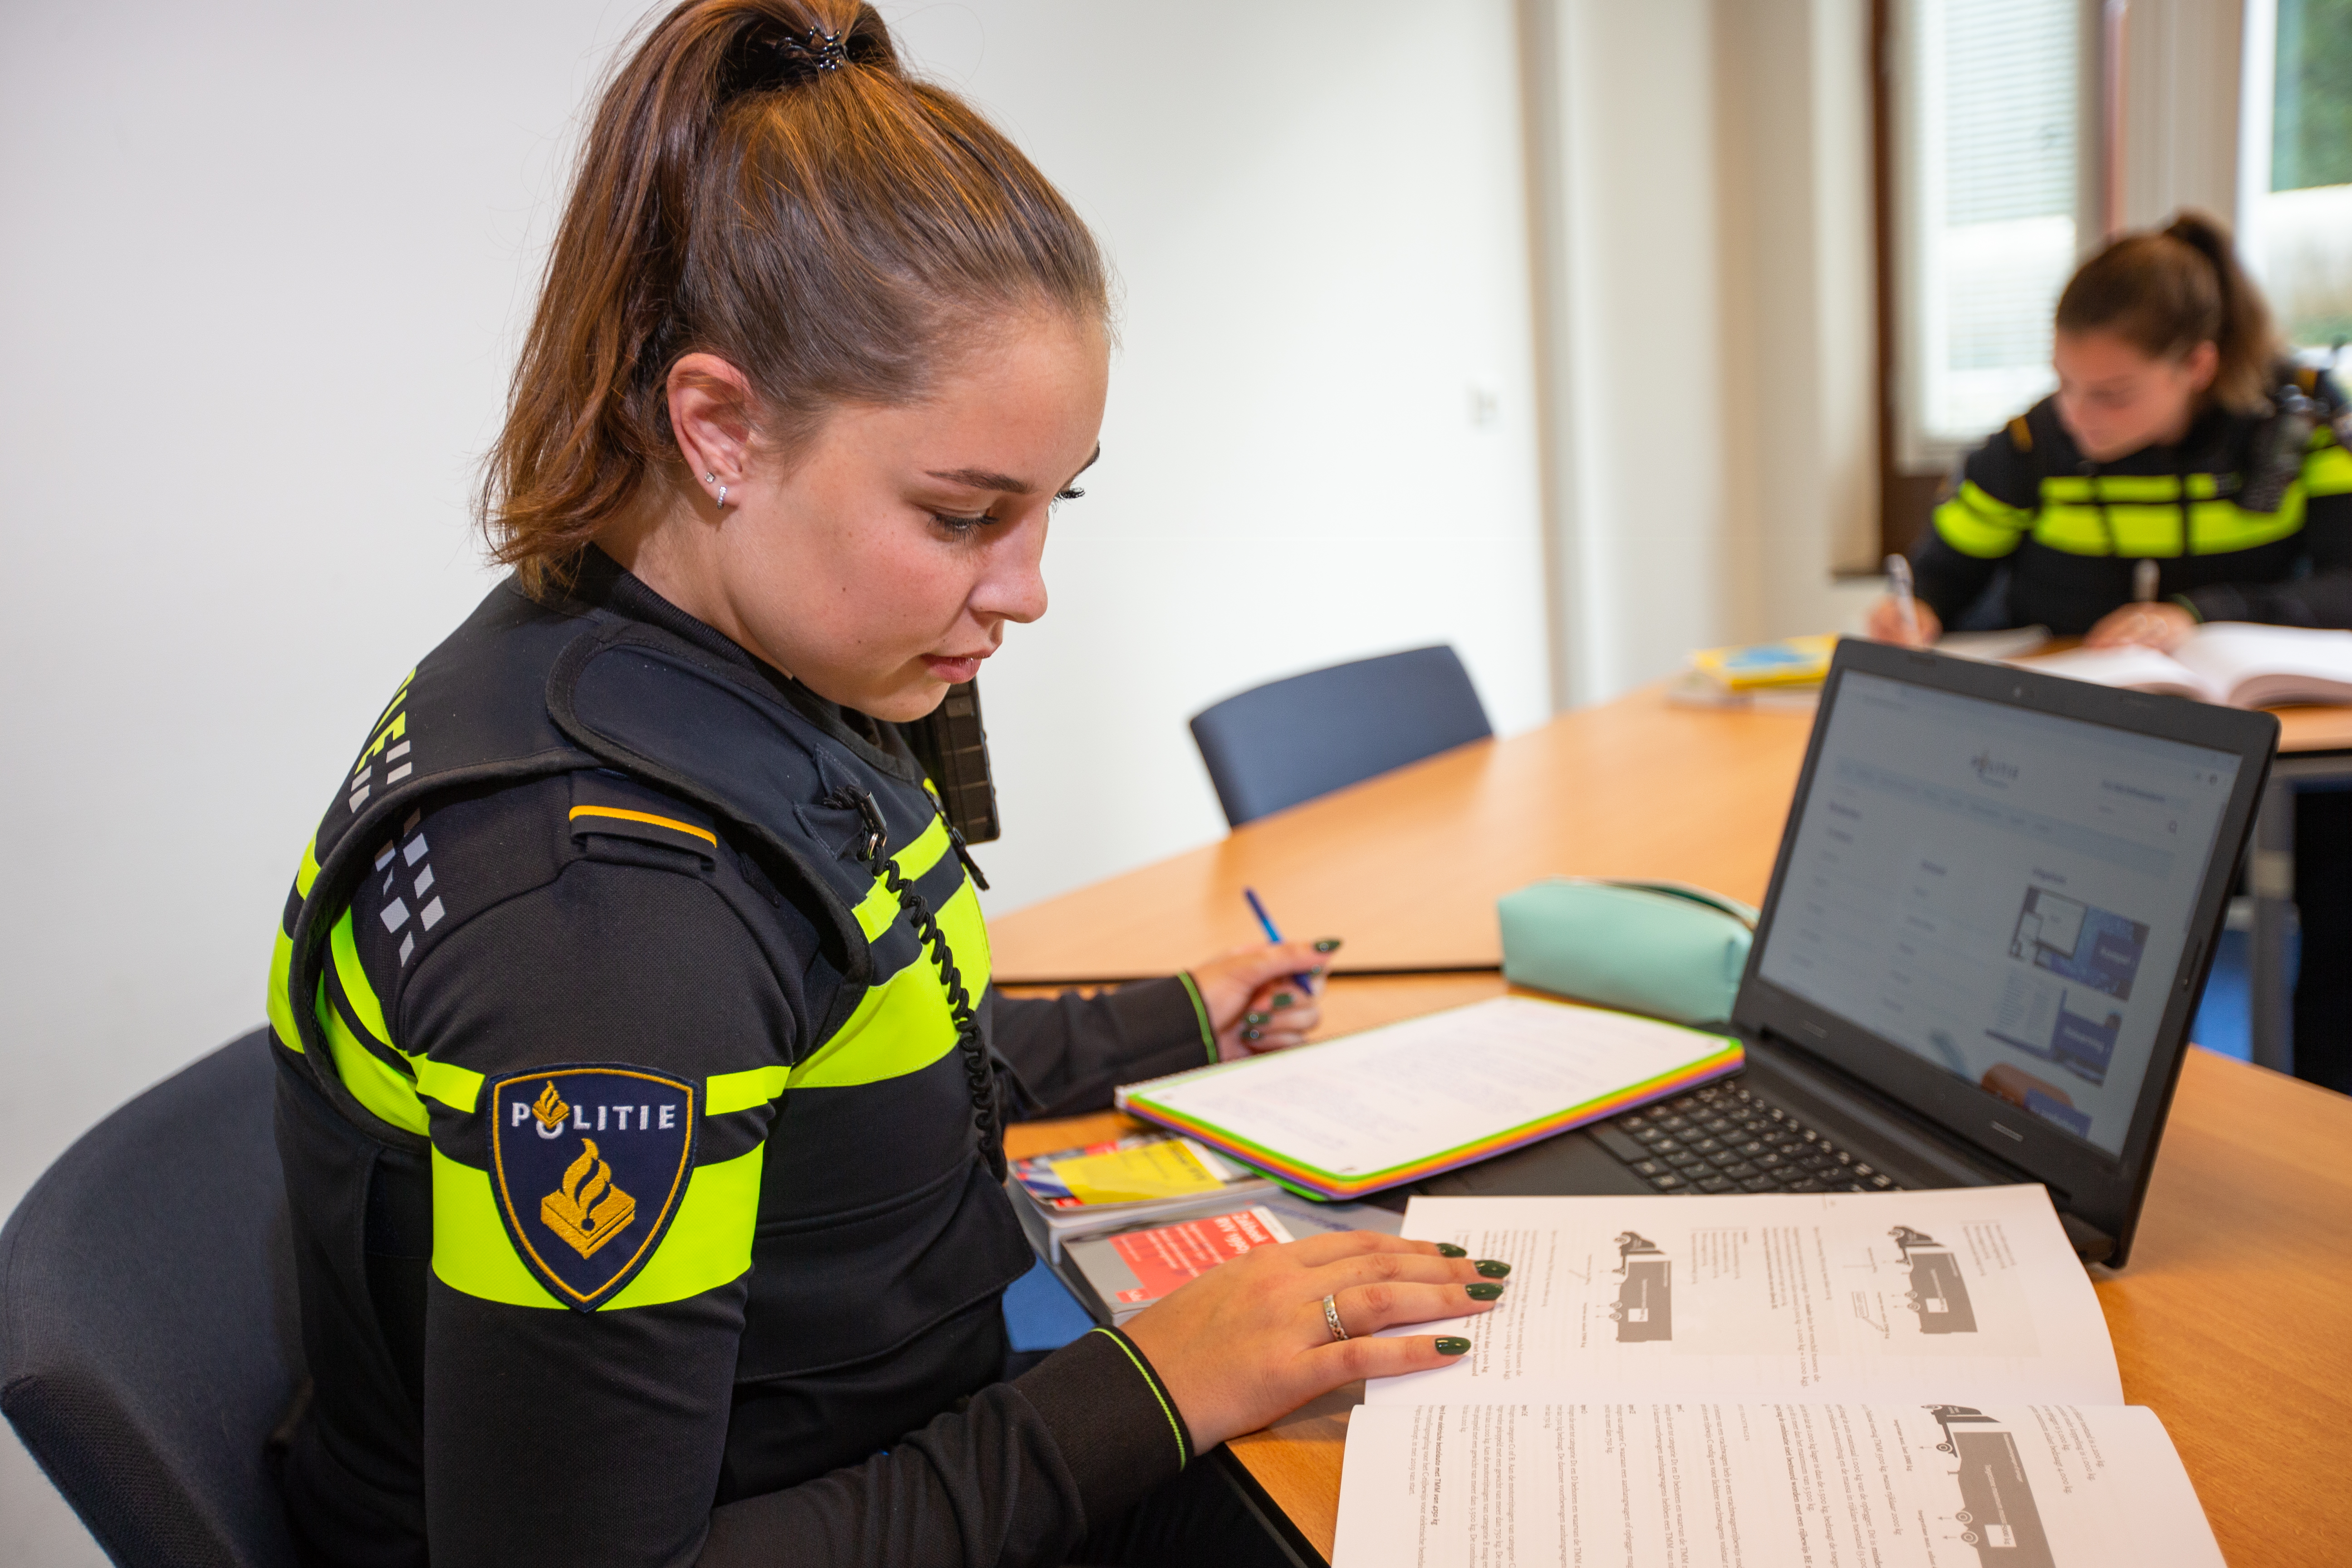 Reactie op artikel De Limburger: Politieacademie maakt nieuwe agenten startbekwaam